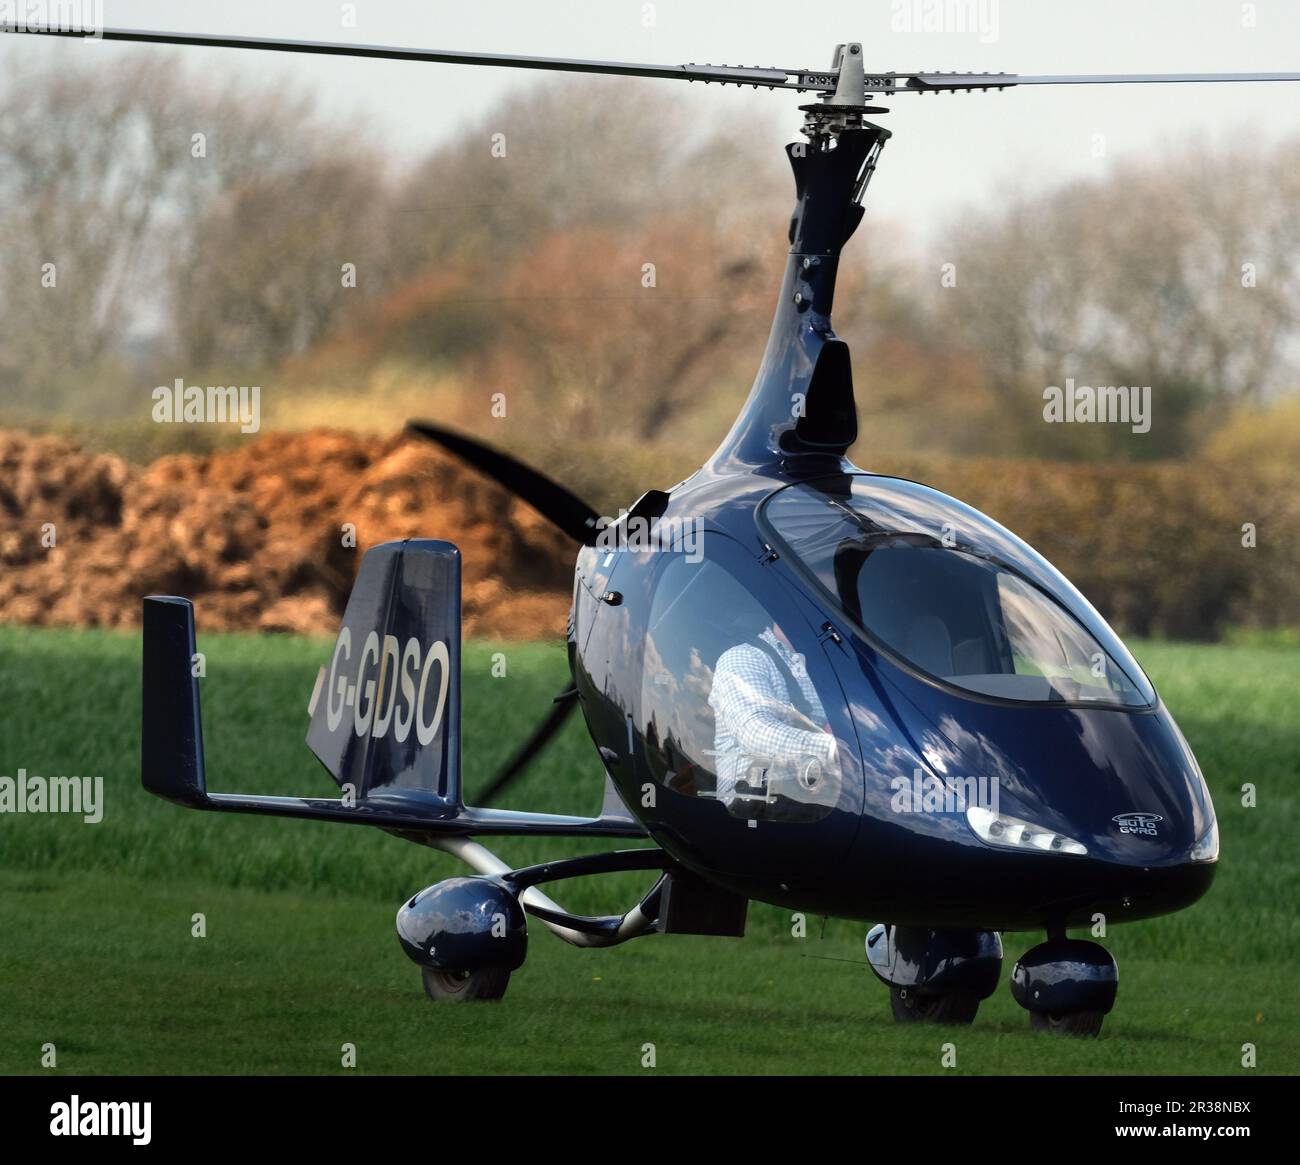 Avion autogyro moderne en visite au club de vol au Royaume-Uni. Banque D'Images